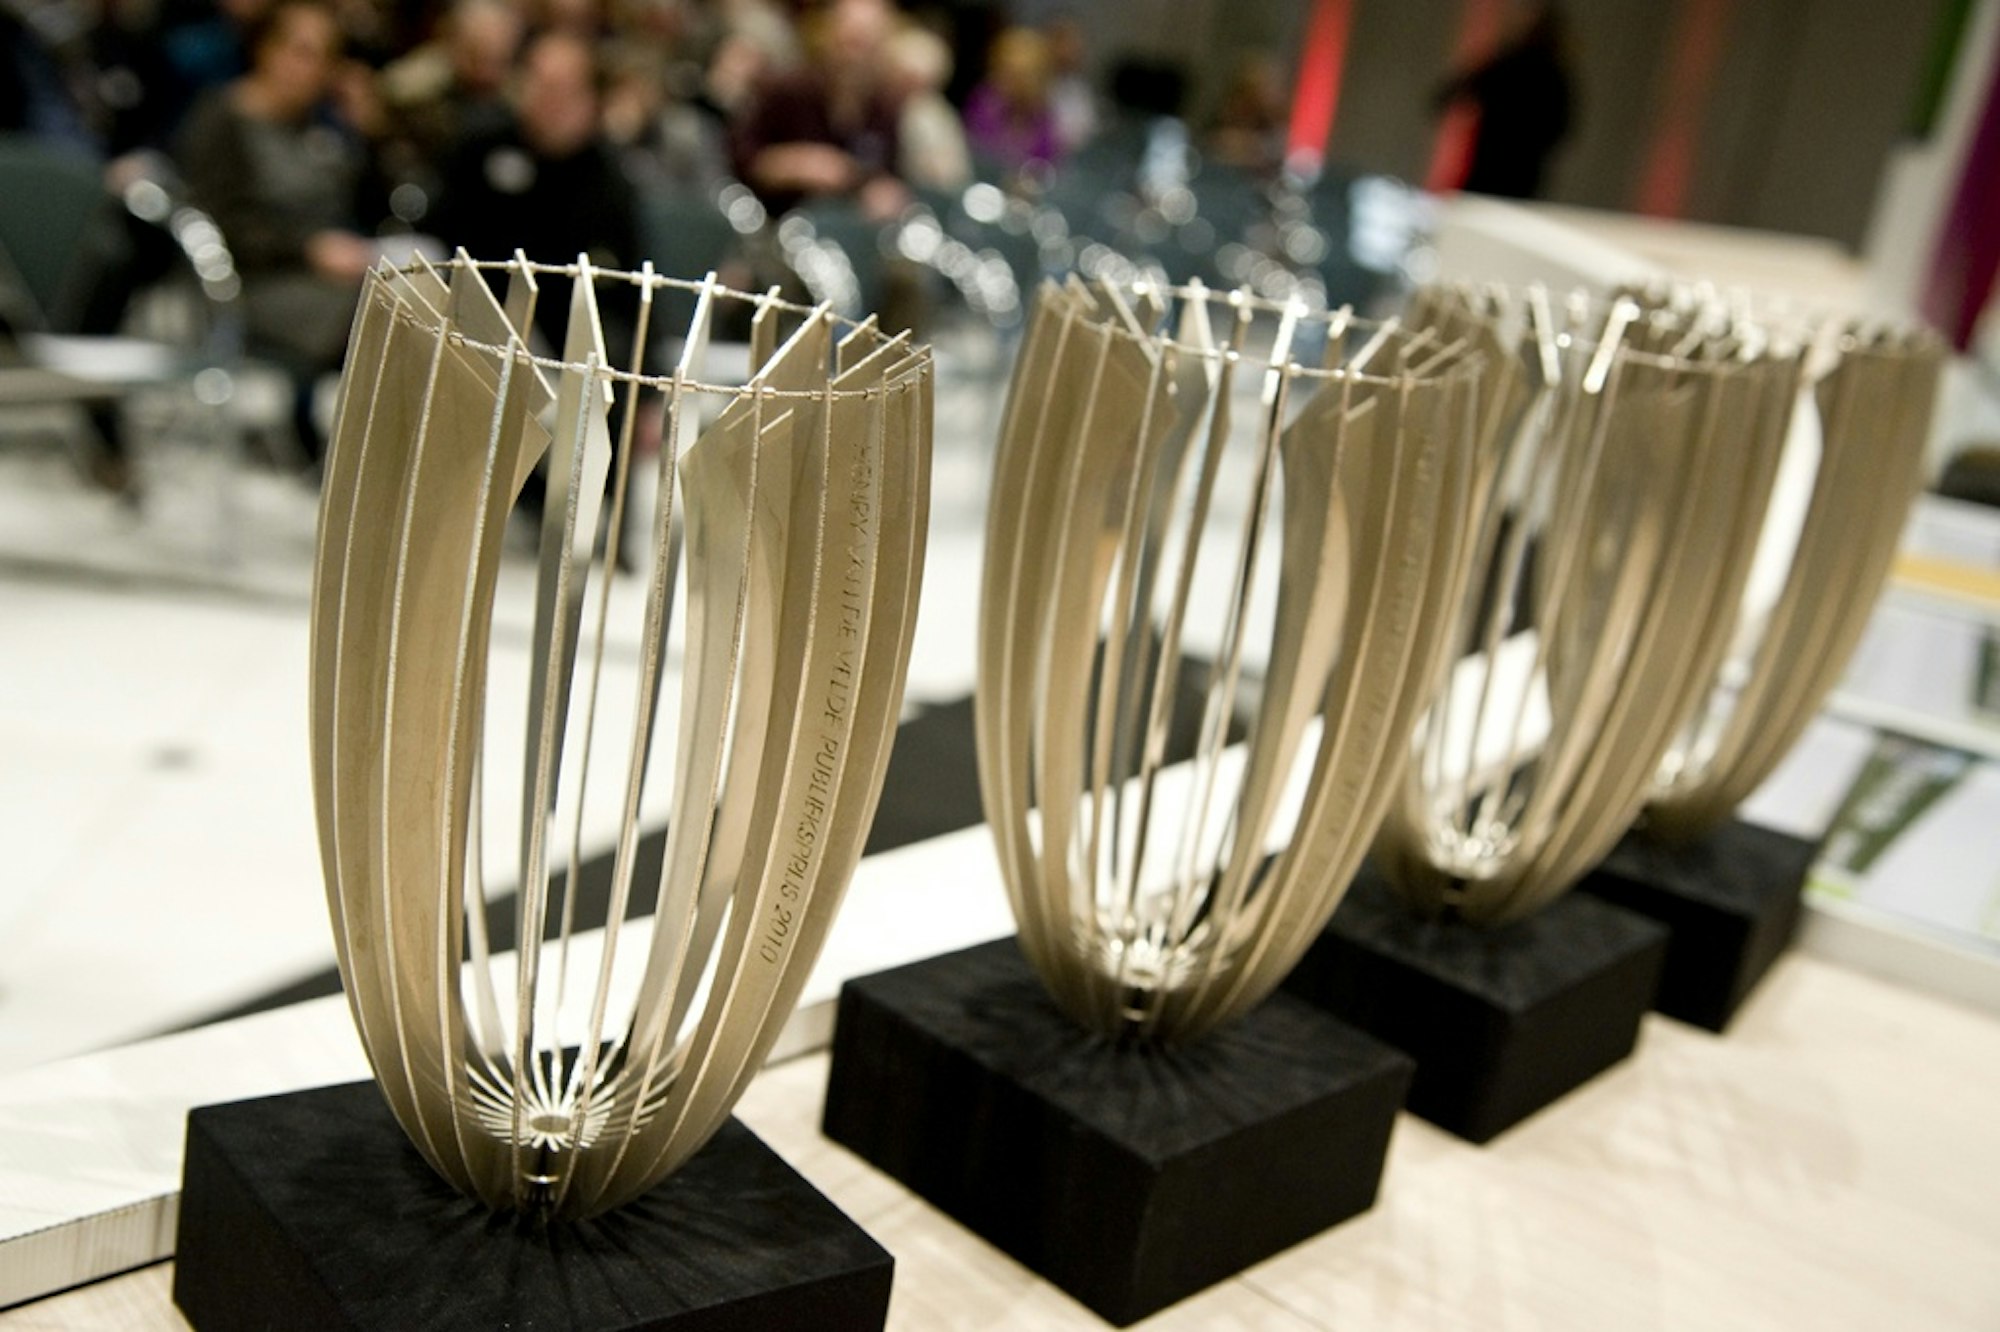 The Henry van de Velde trophies, designed by Helena Schepens (2011) © Michael De Lausnay